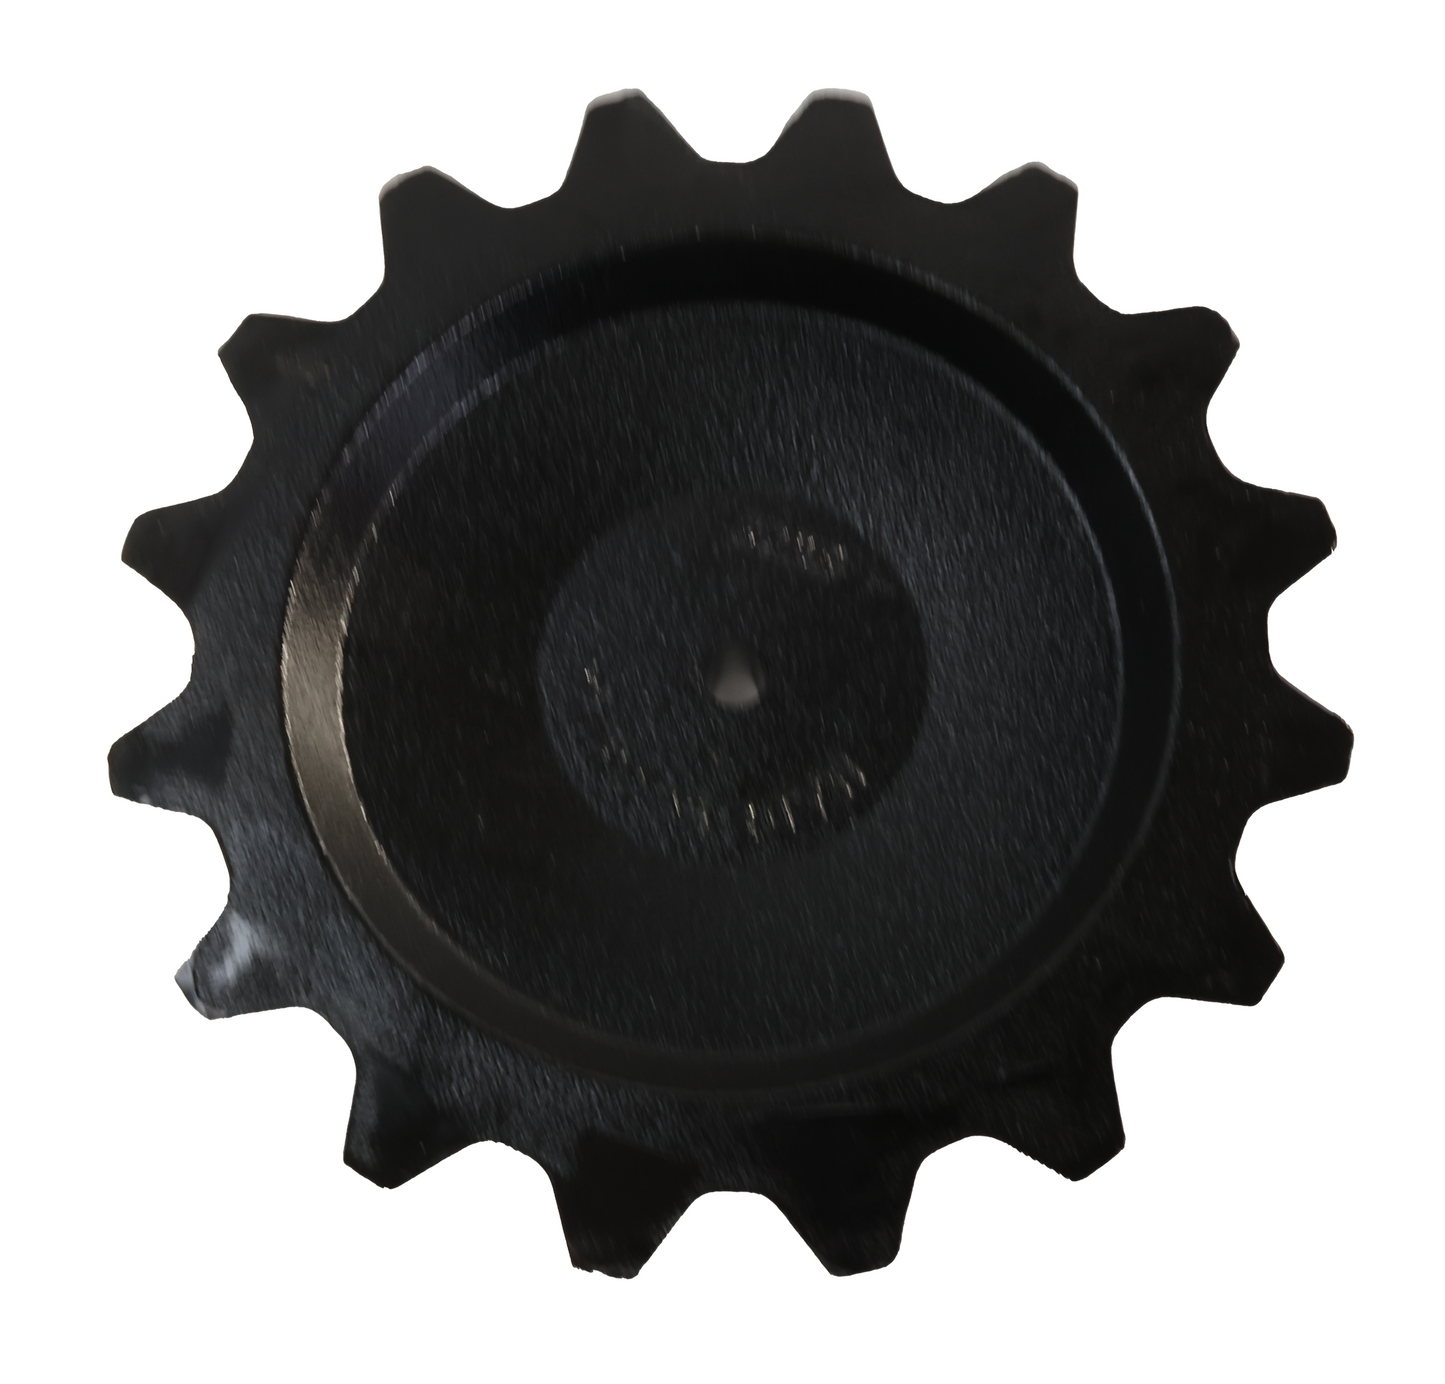 John Deere Original Equipment Wheel - A105392